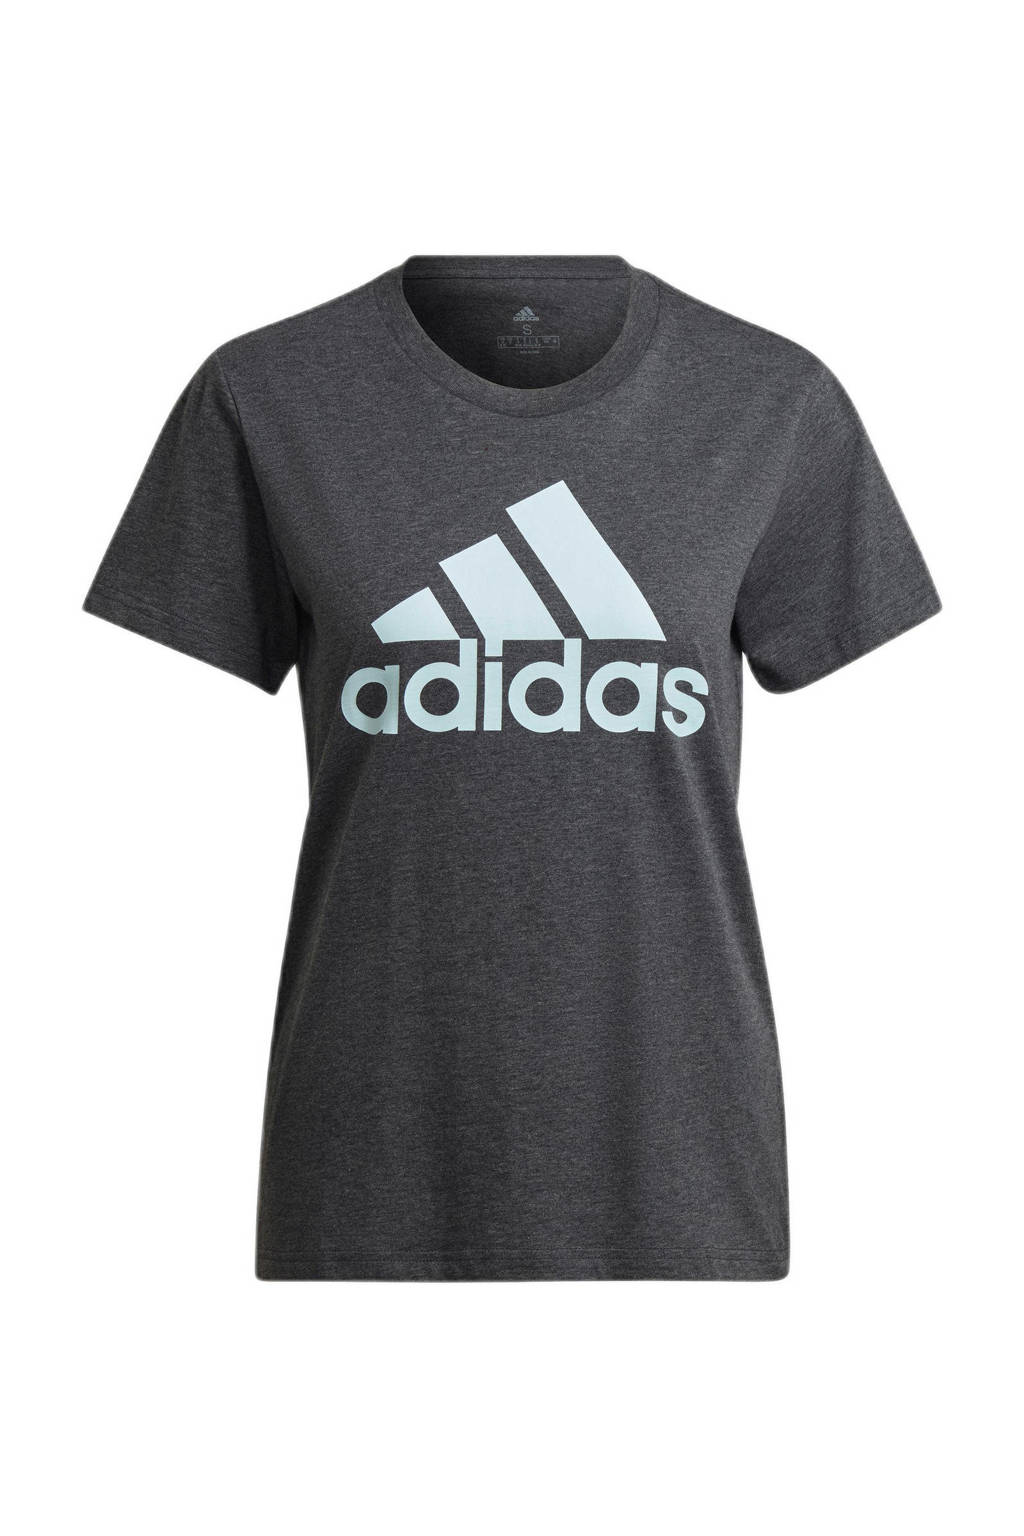 adidas Performance sport T-shirt antraciet/lichtblauw